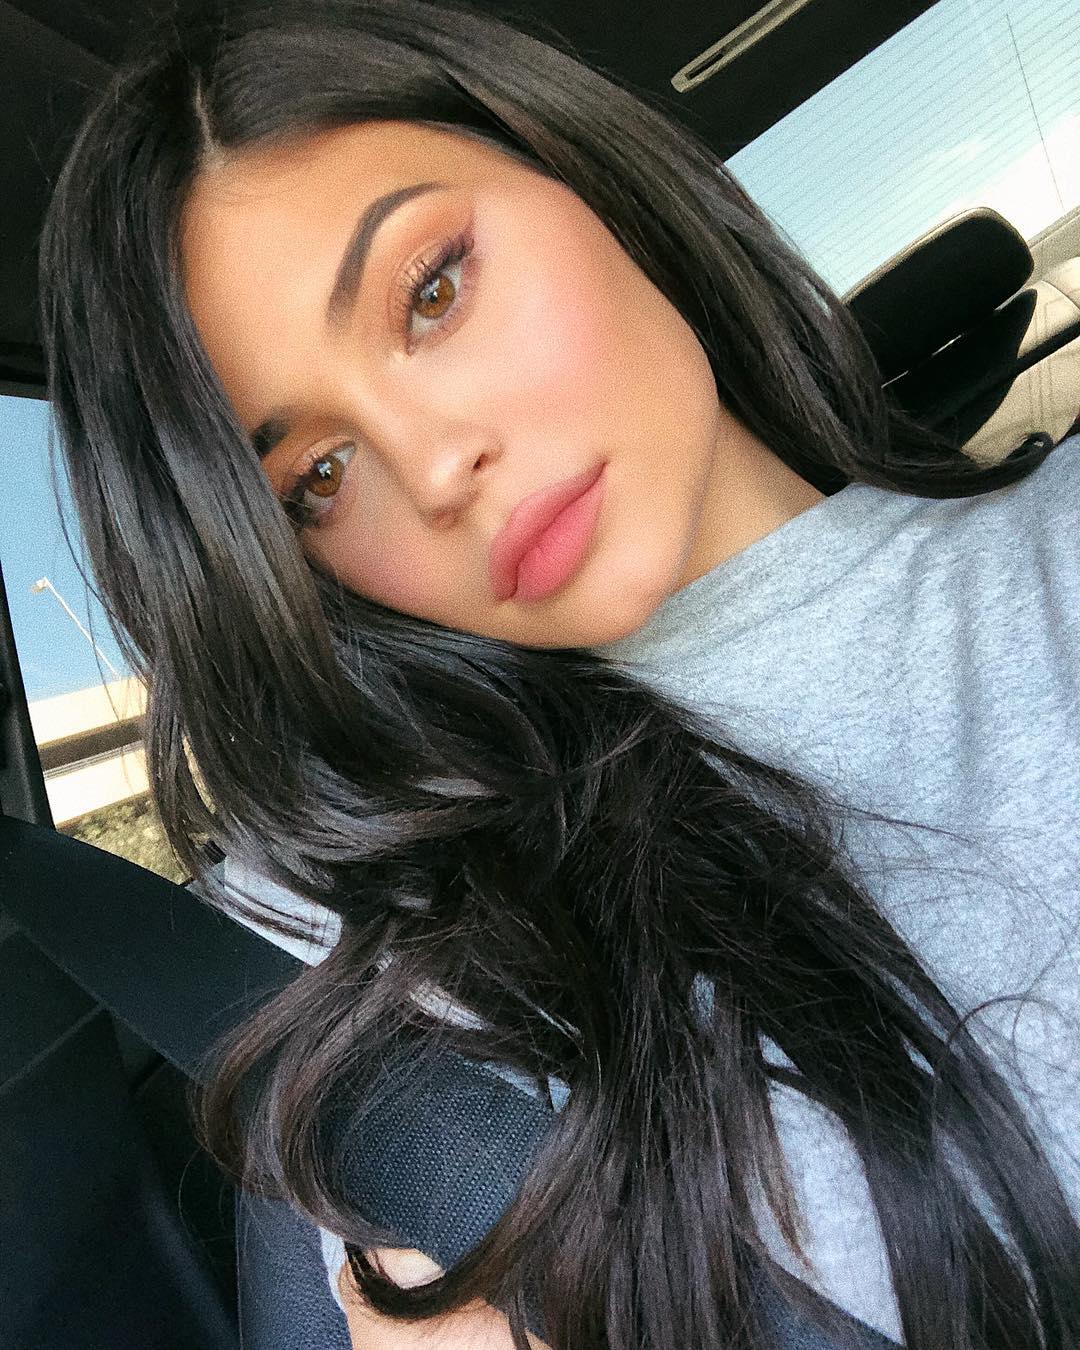 A selfie of Kylie Jenner sporting a feline eye makeup look